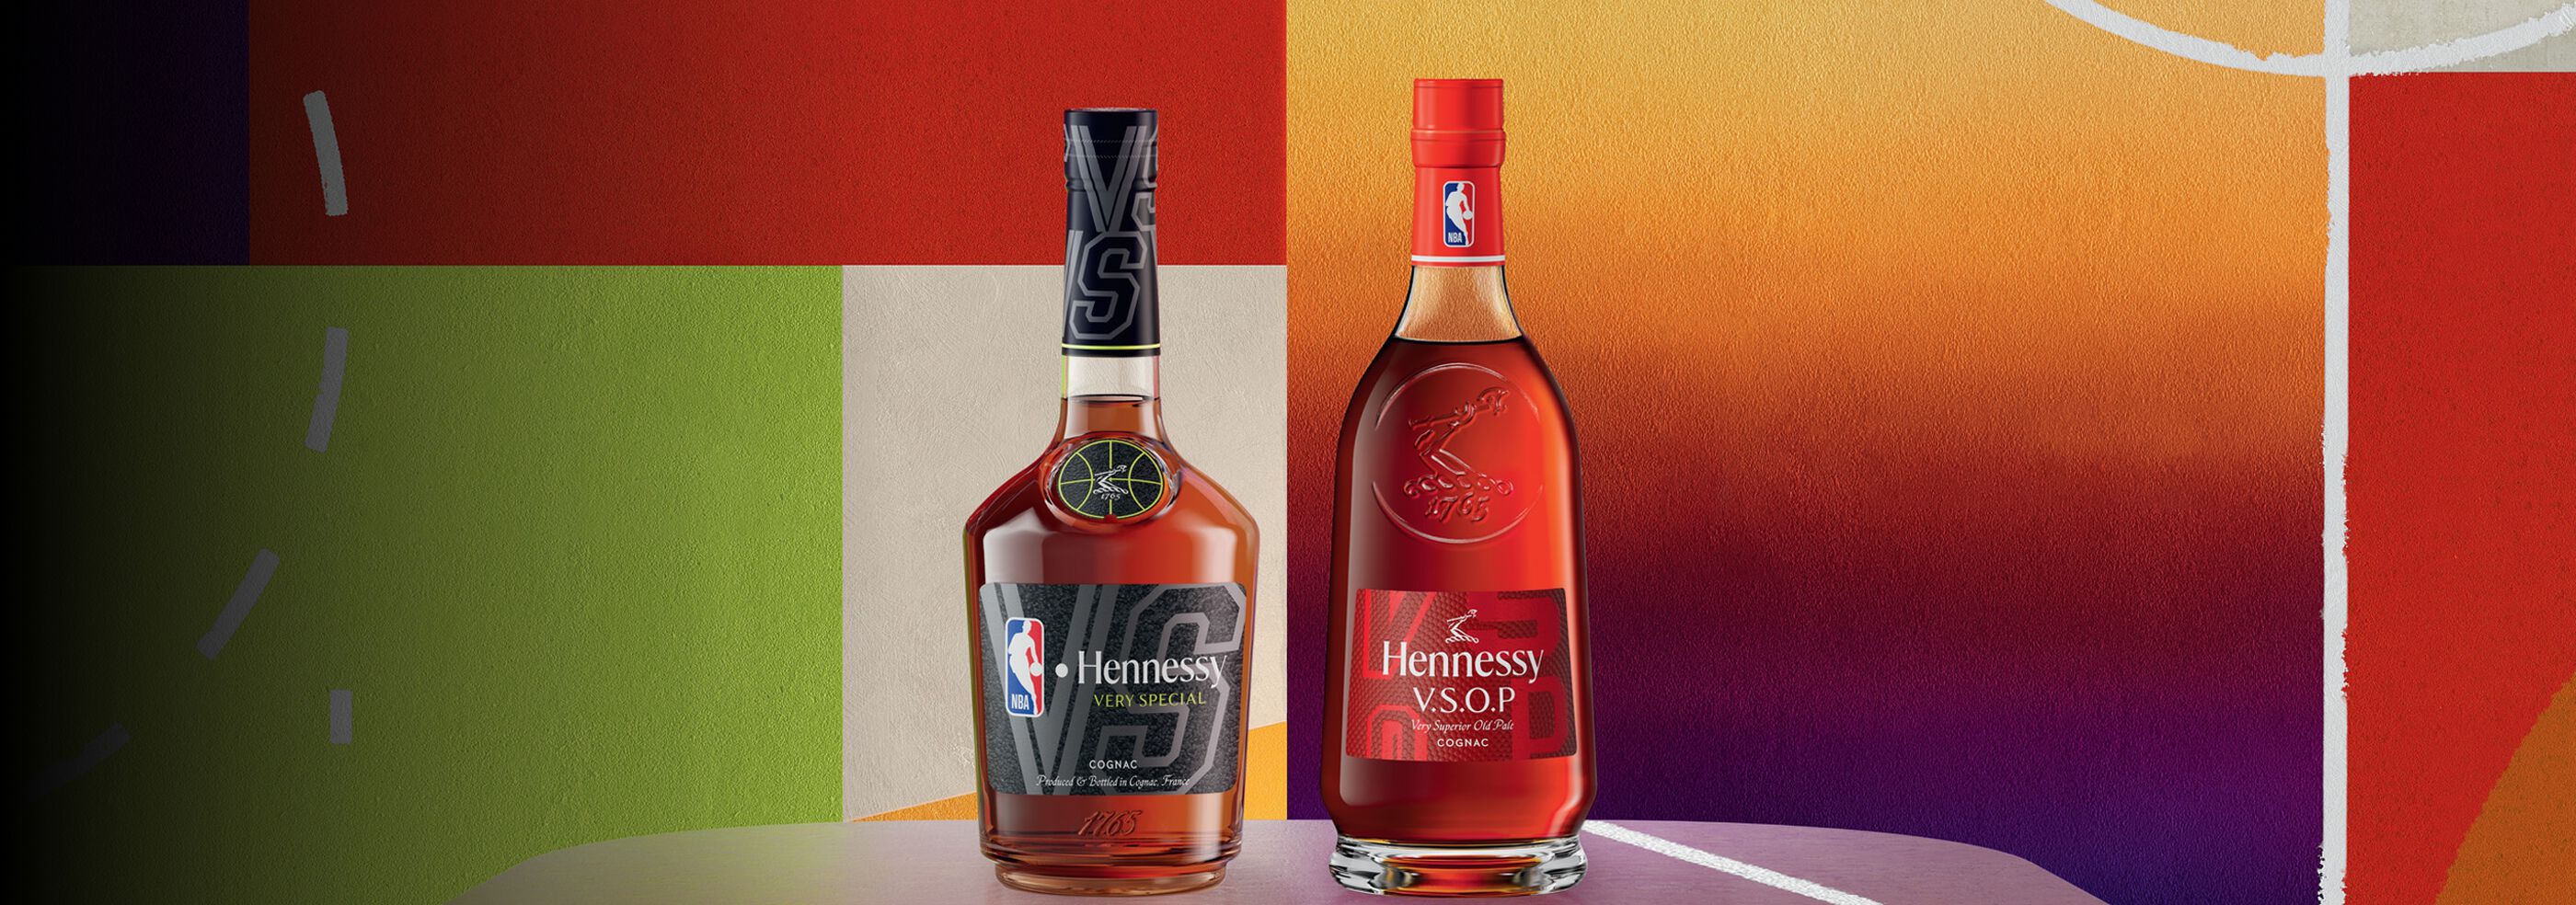 2 bottles of Hennessy NBA